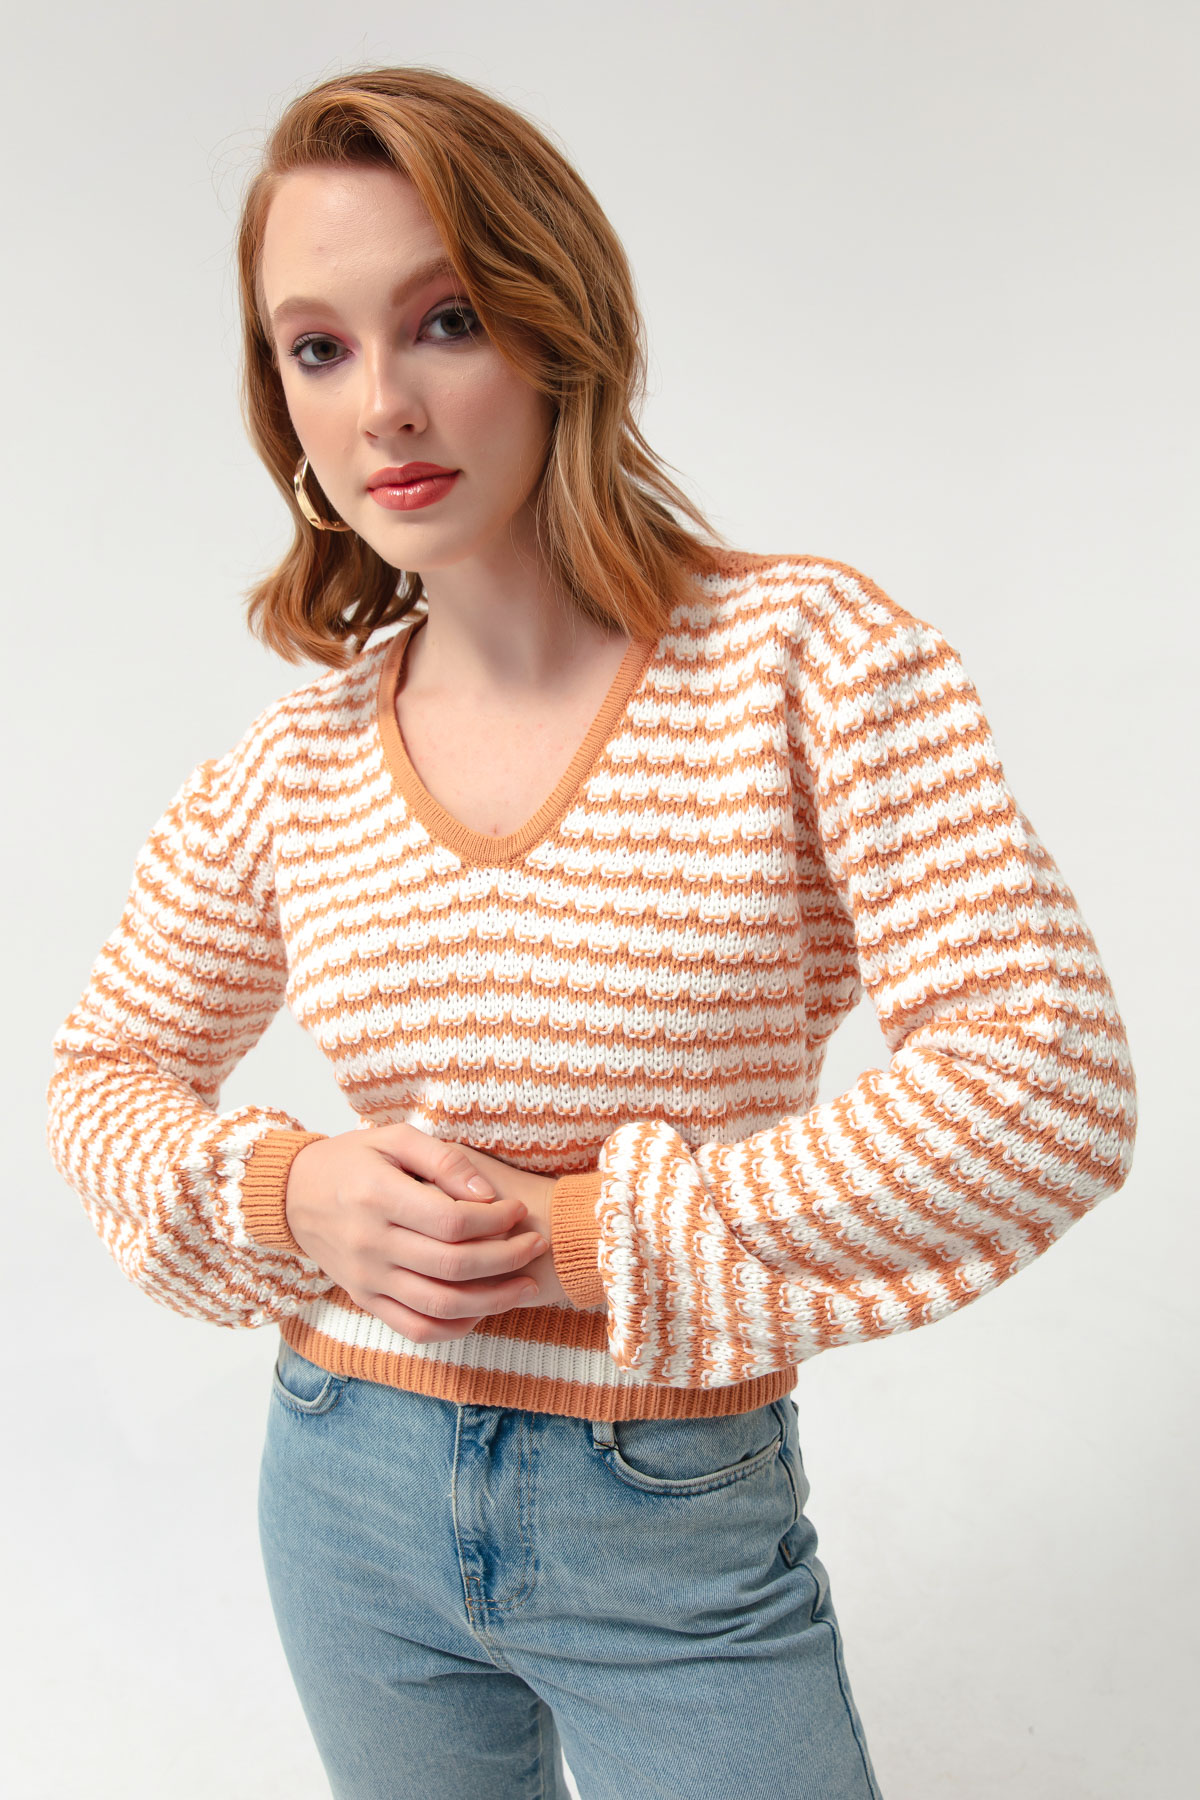 Women's Salmon V-Neck Striped Knitwear Sweater